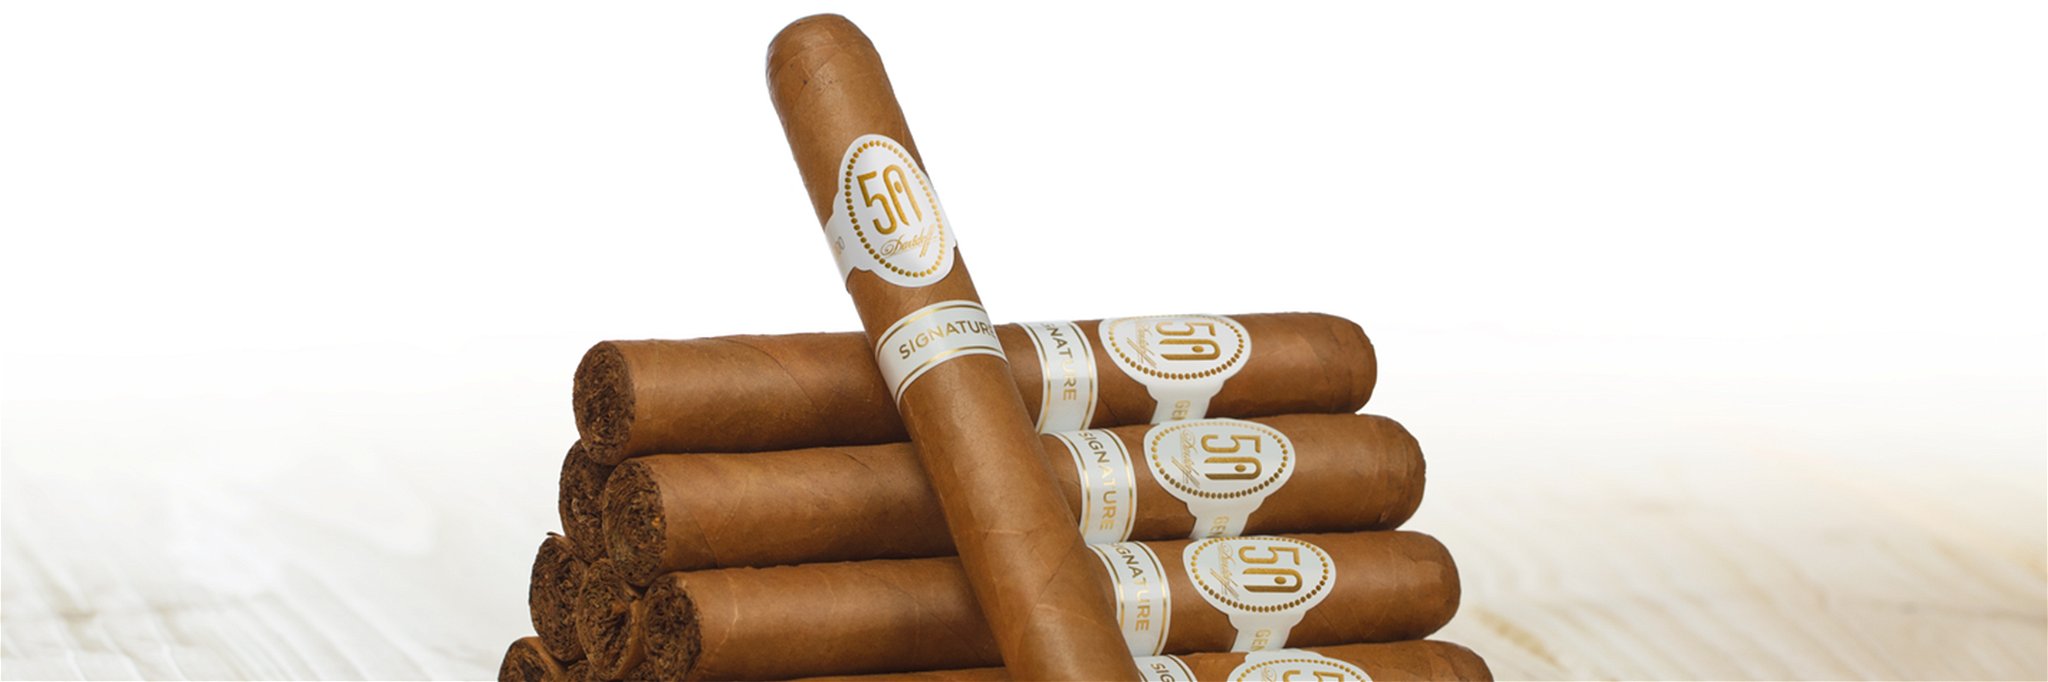 Bereits seit 1968 ziert der legendäre ovale weisse Zigarrenring die Kreationen von Davidoff.